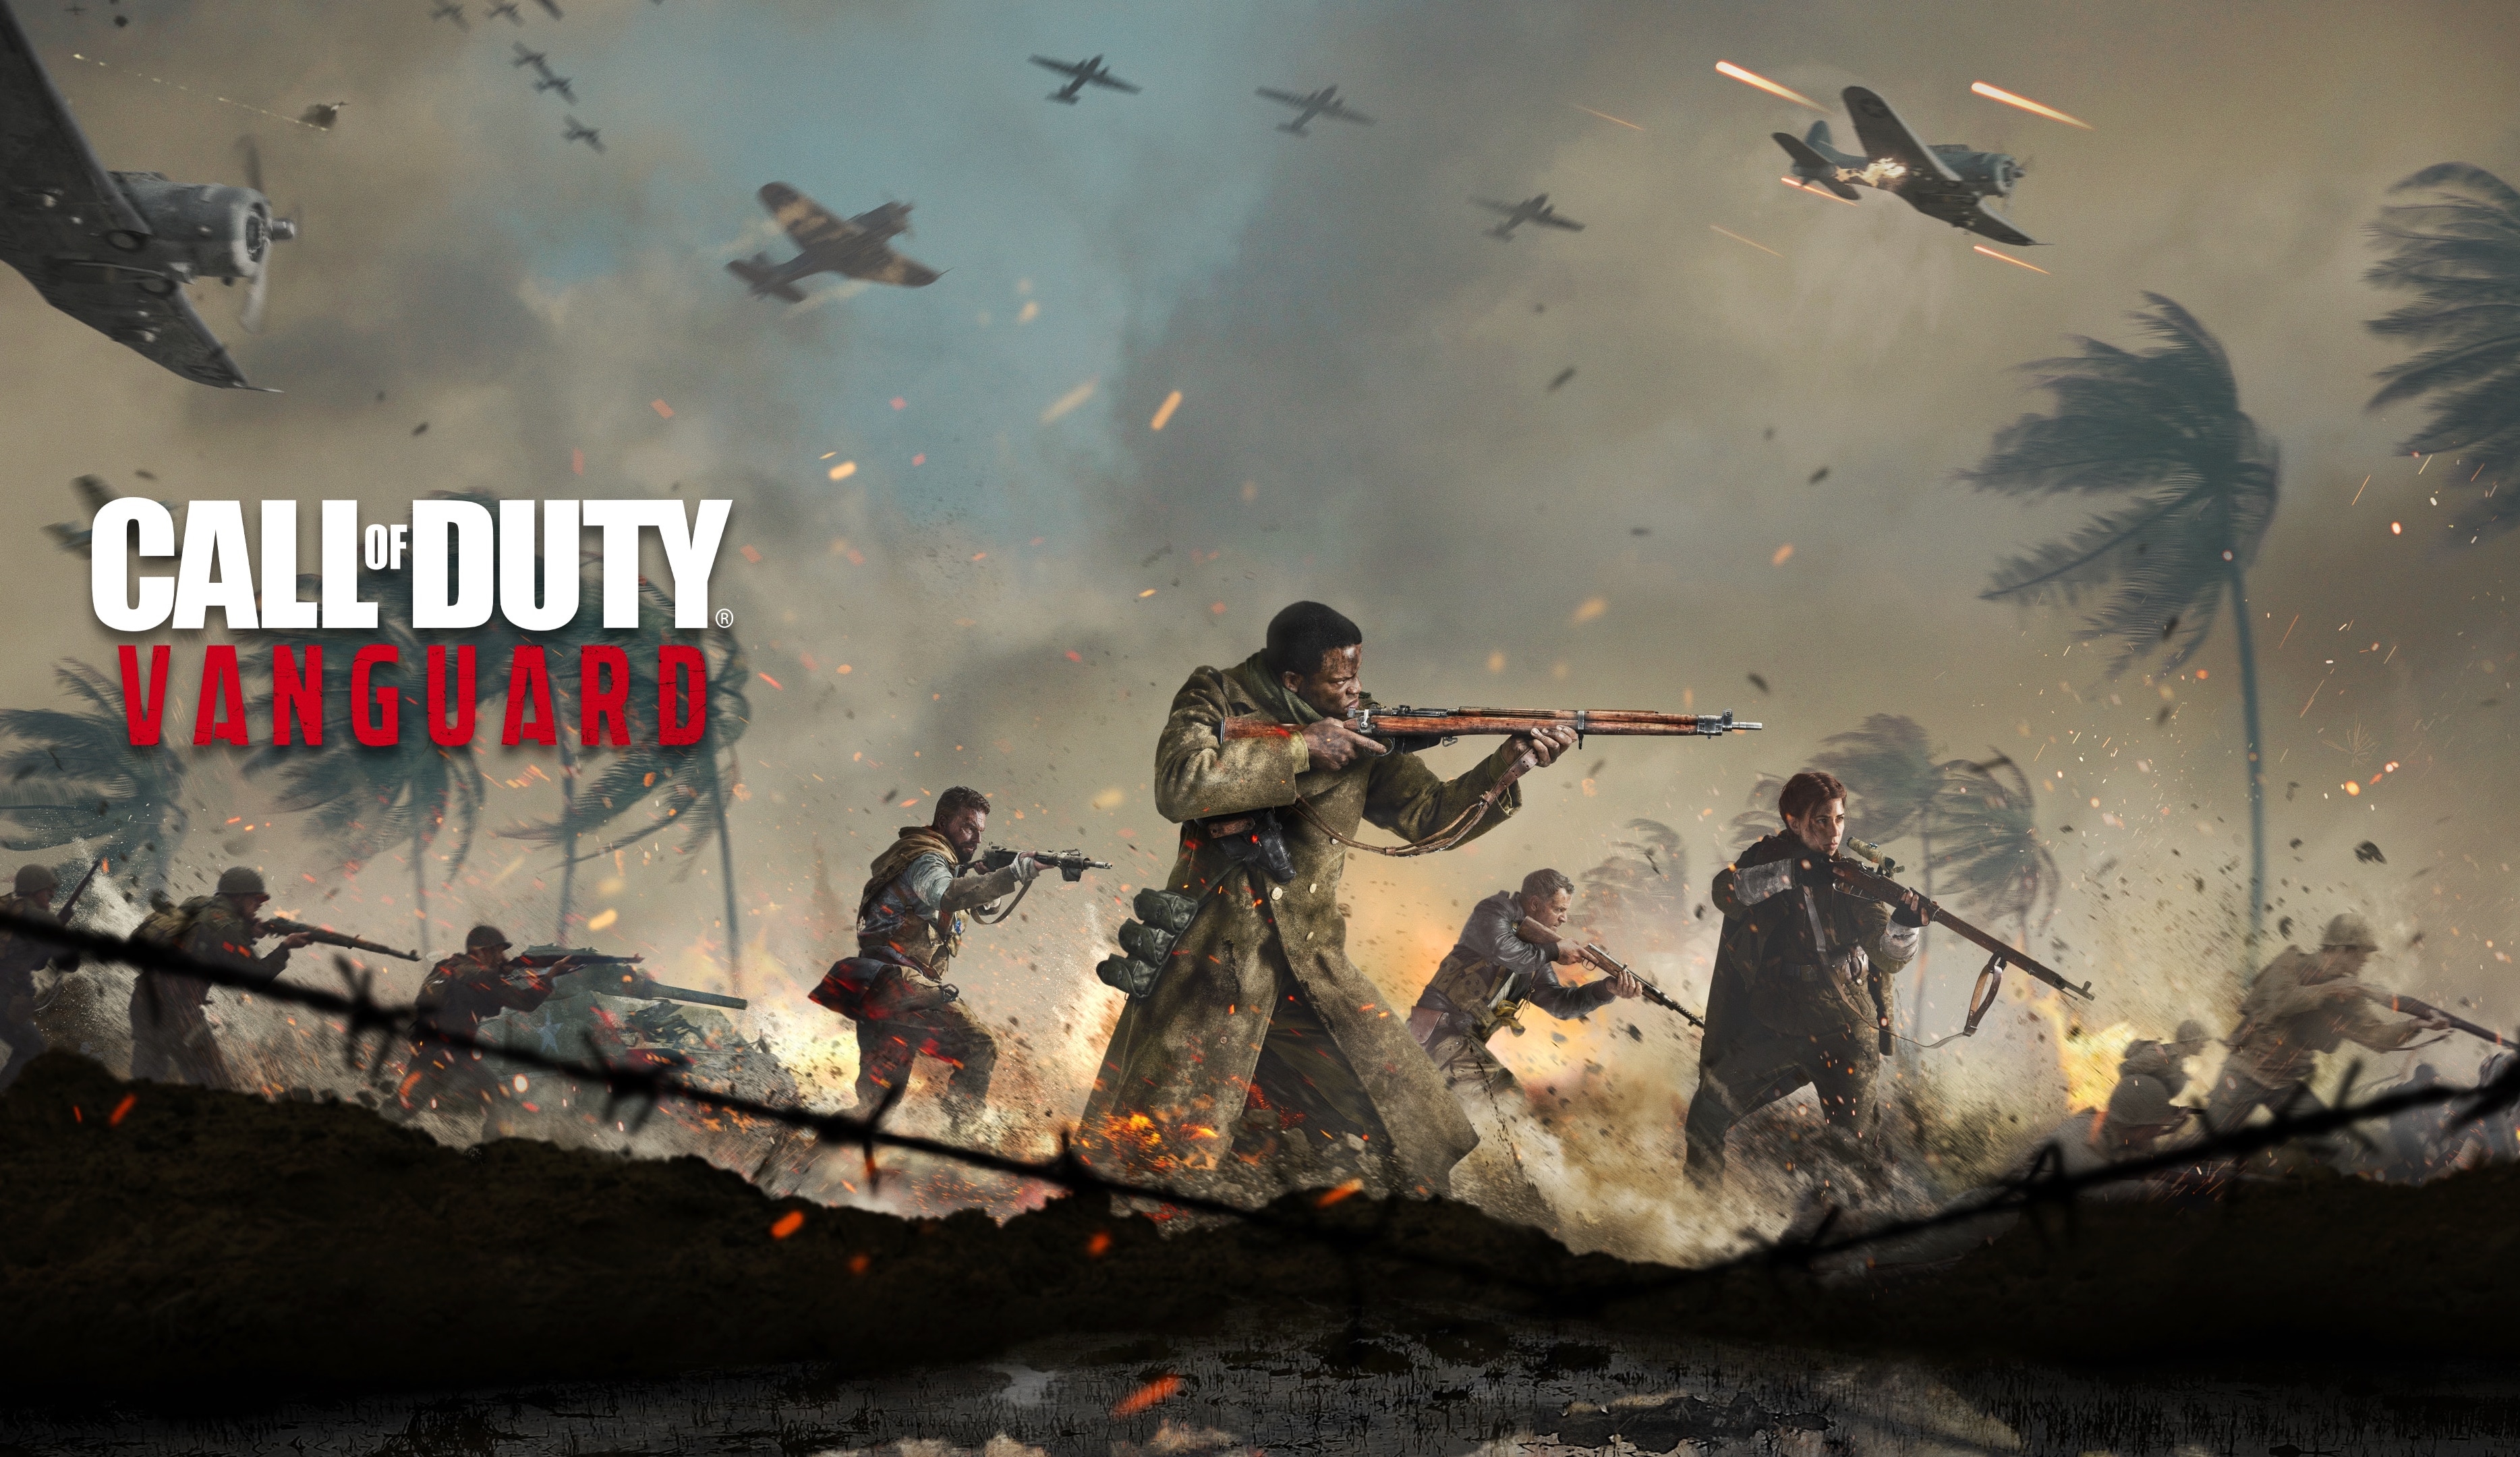 Buy Call of Duty: Battle.net